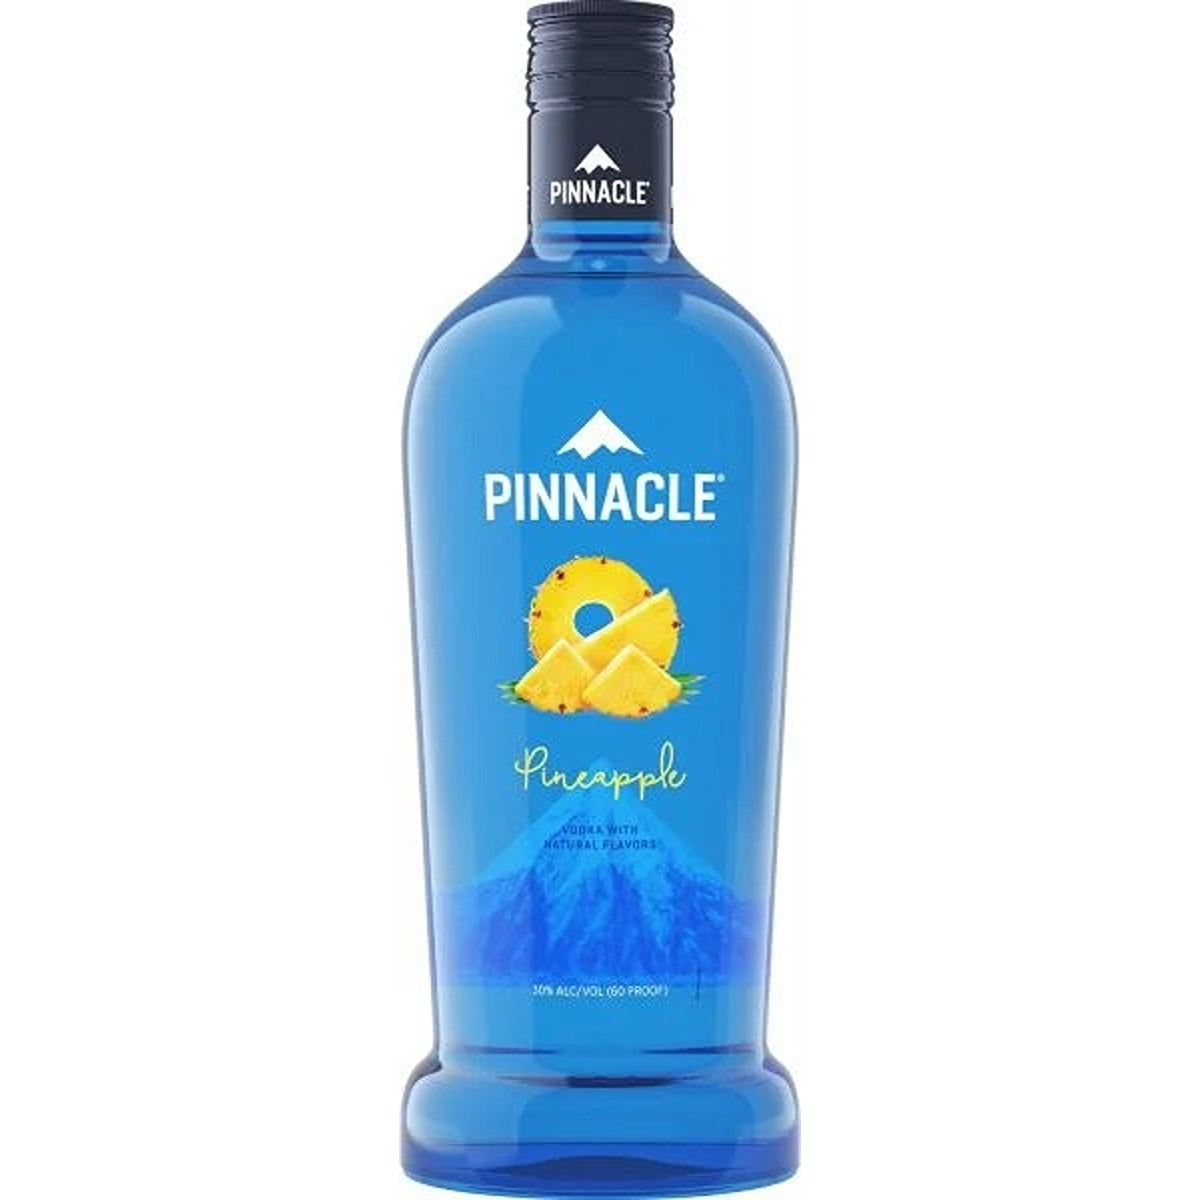 PINNACLE PINEAPPLE 1.75L